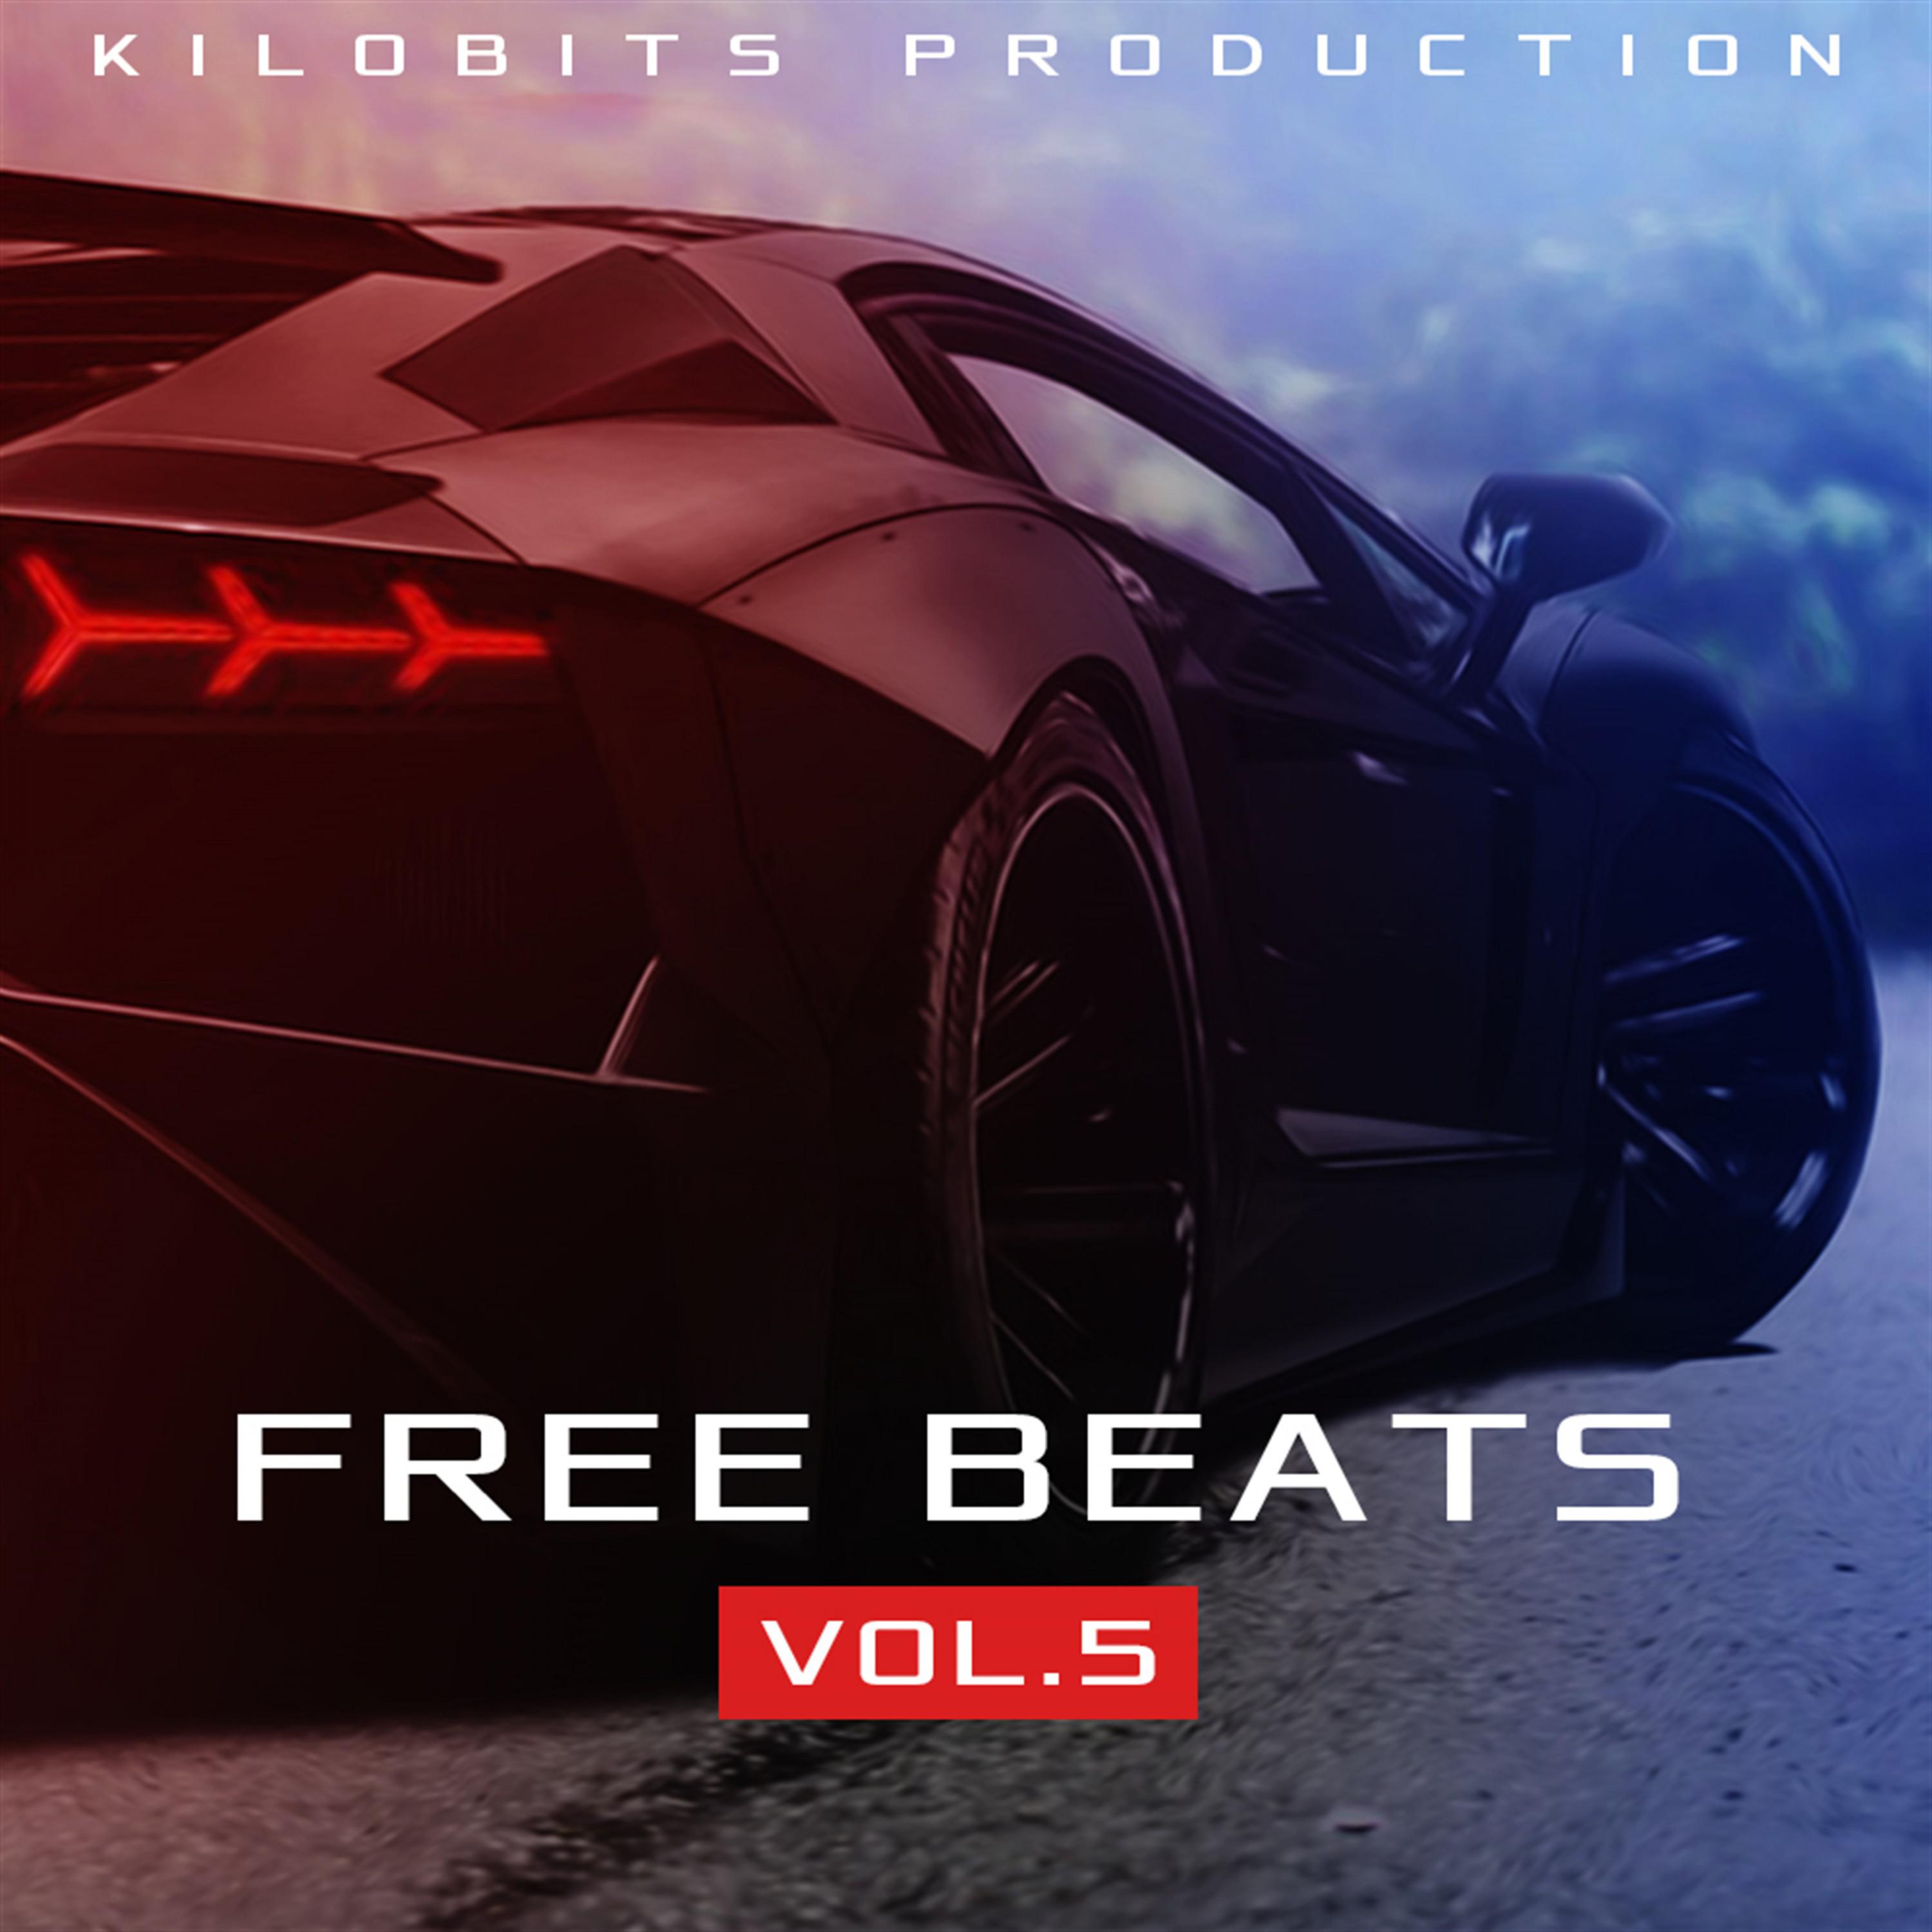 Free Beats Vol. 5